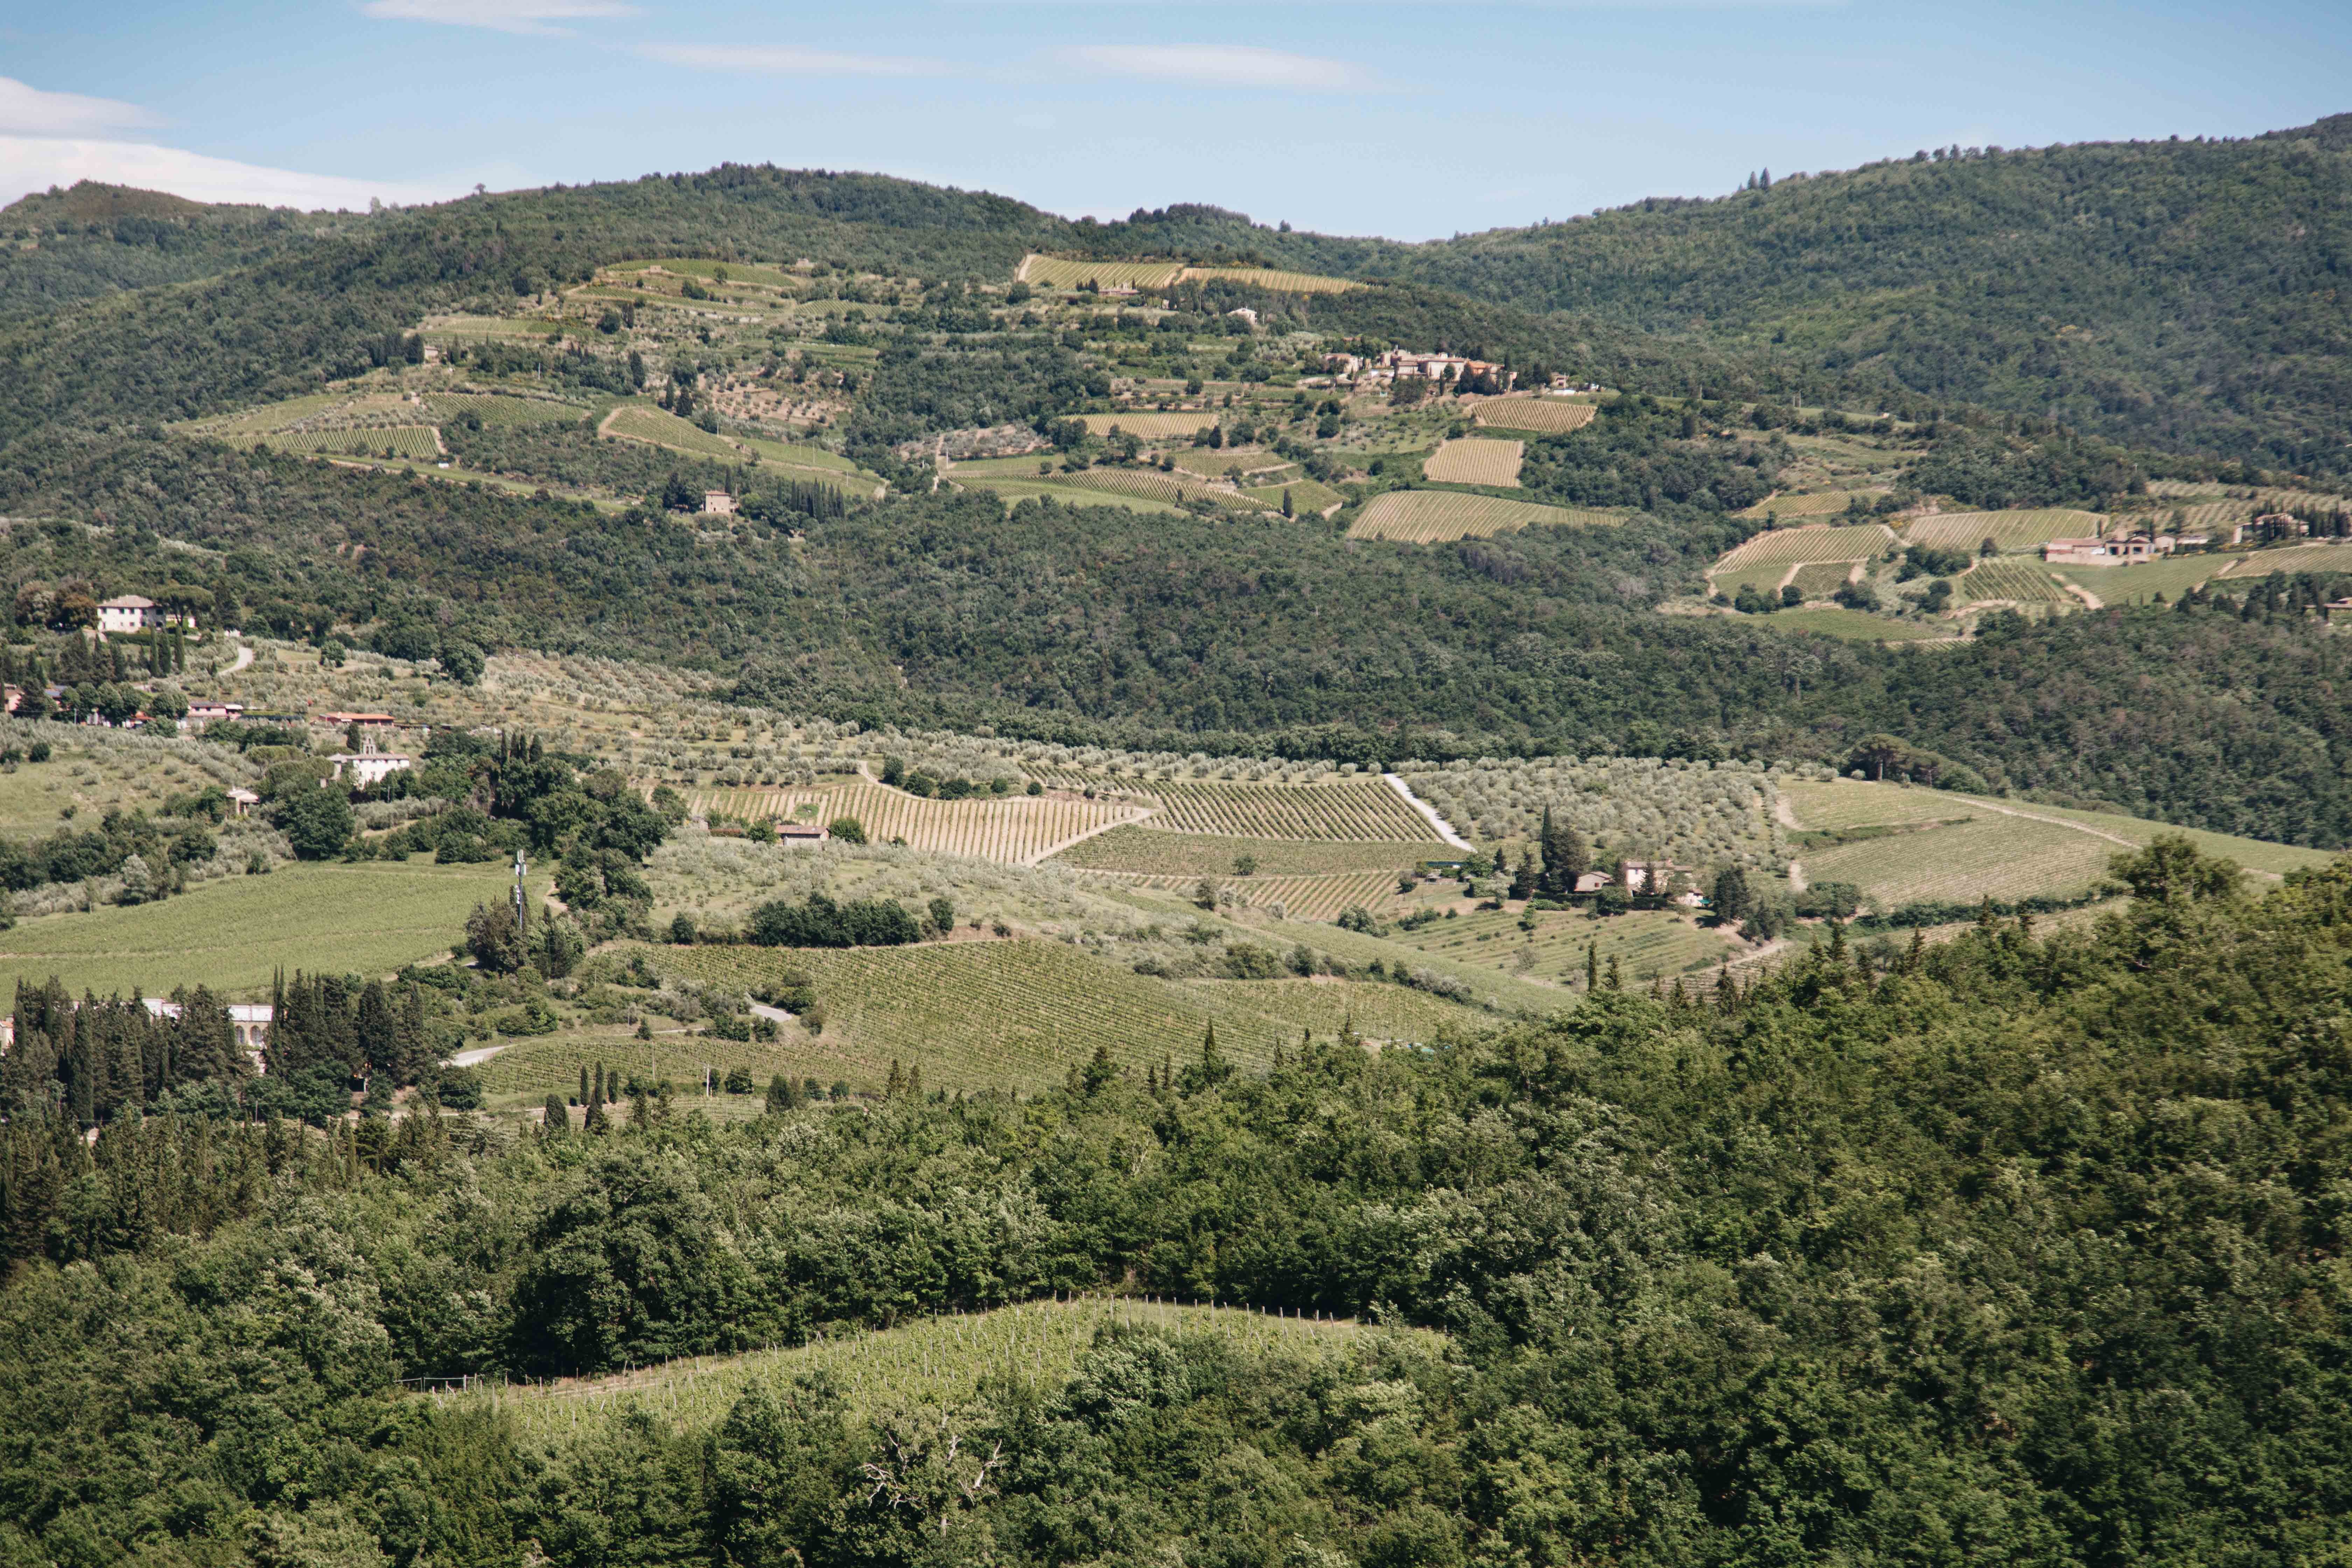 Casas y viñedos esparcidos en la foto de la ladera 